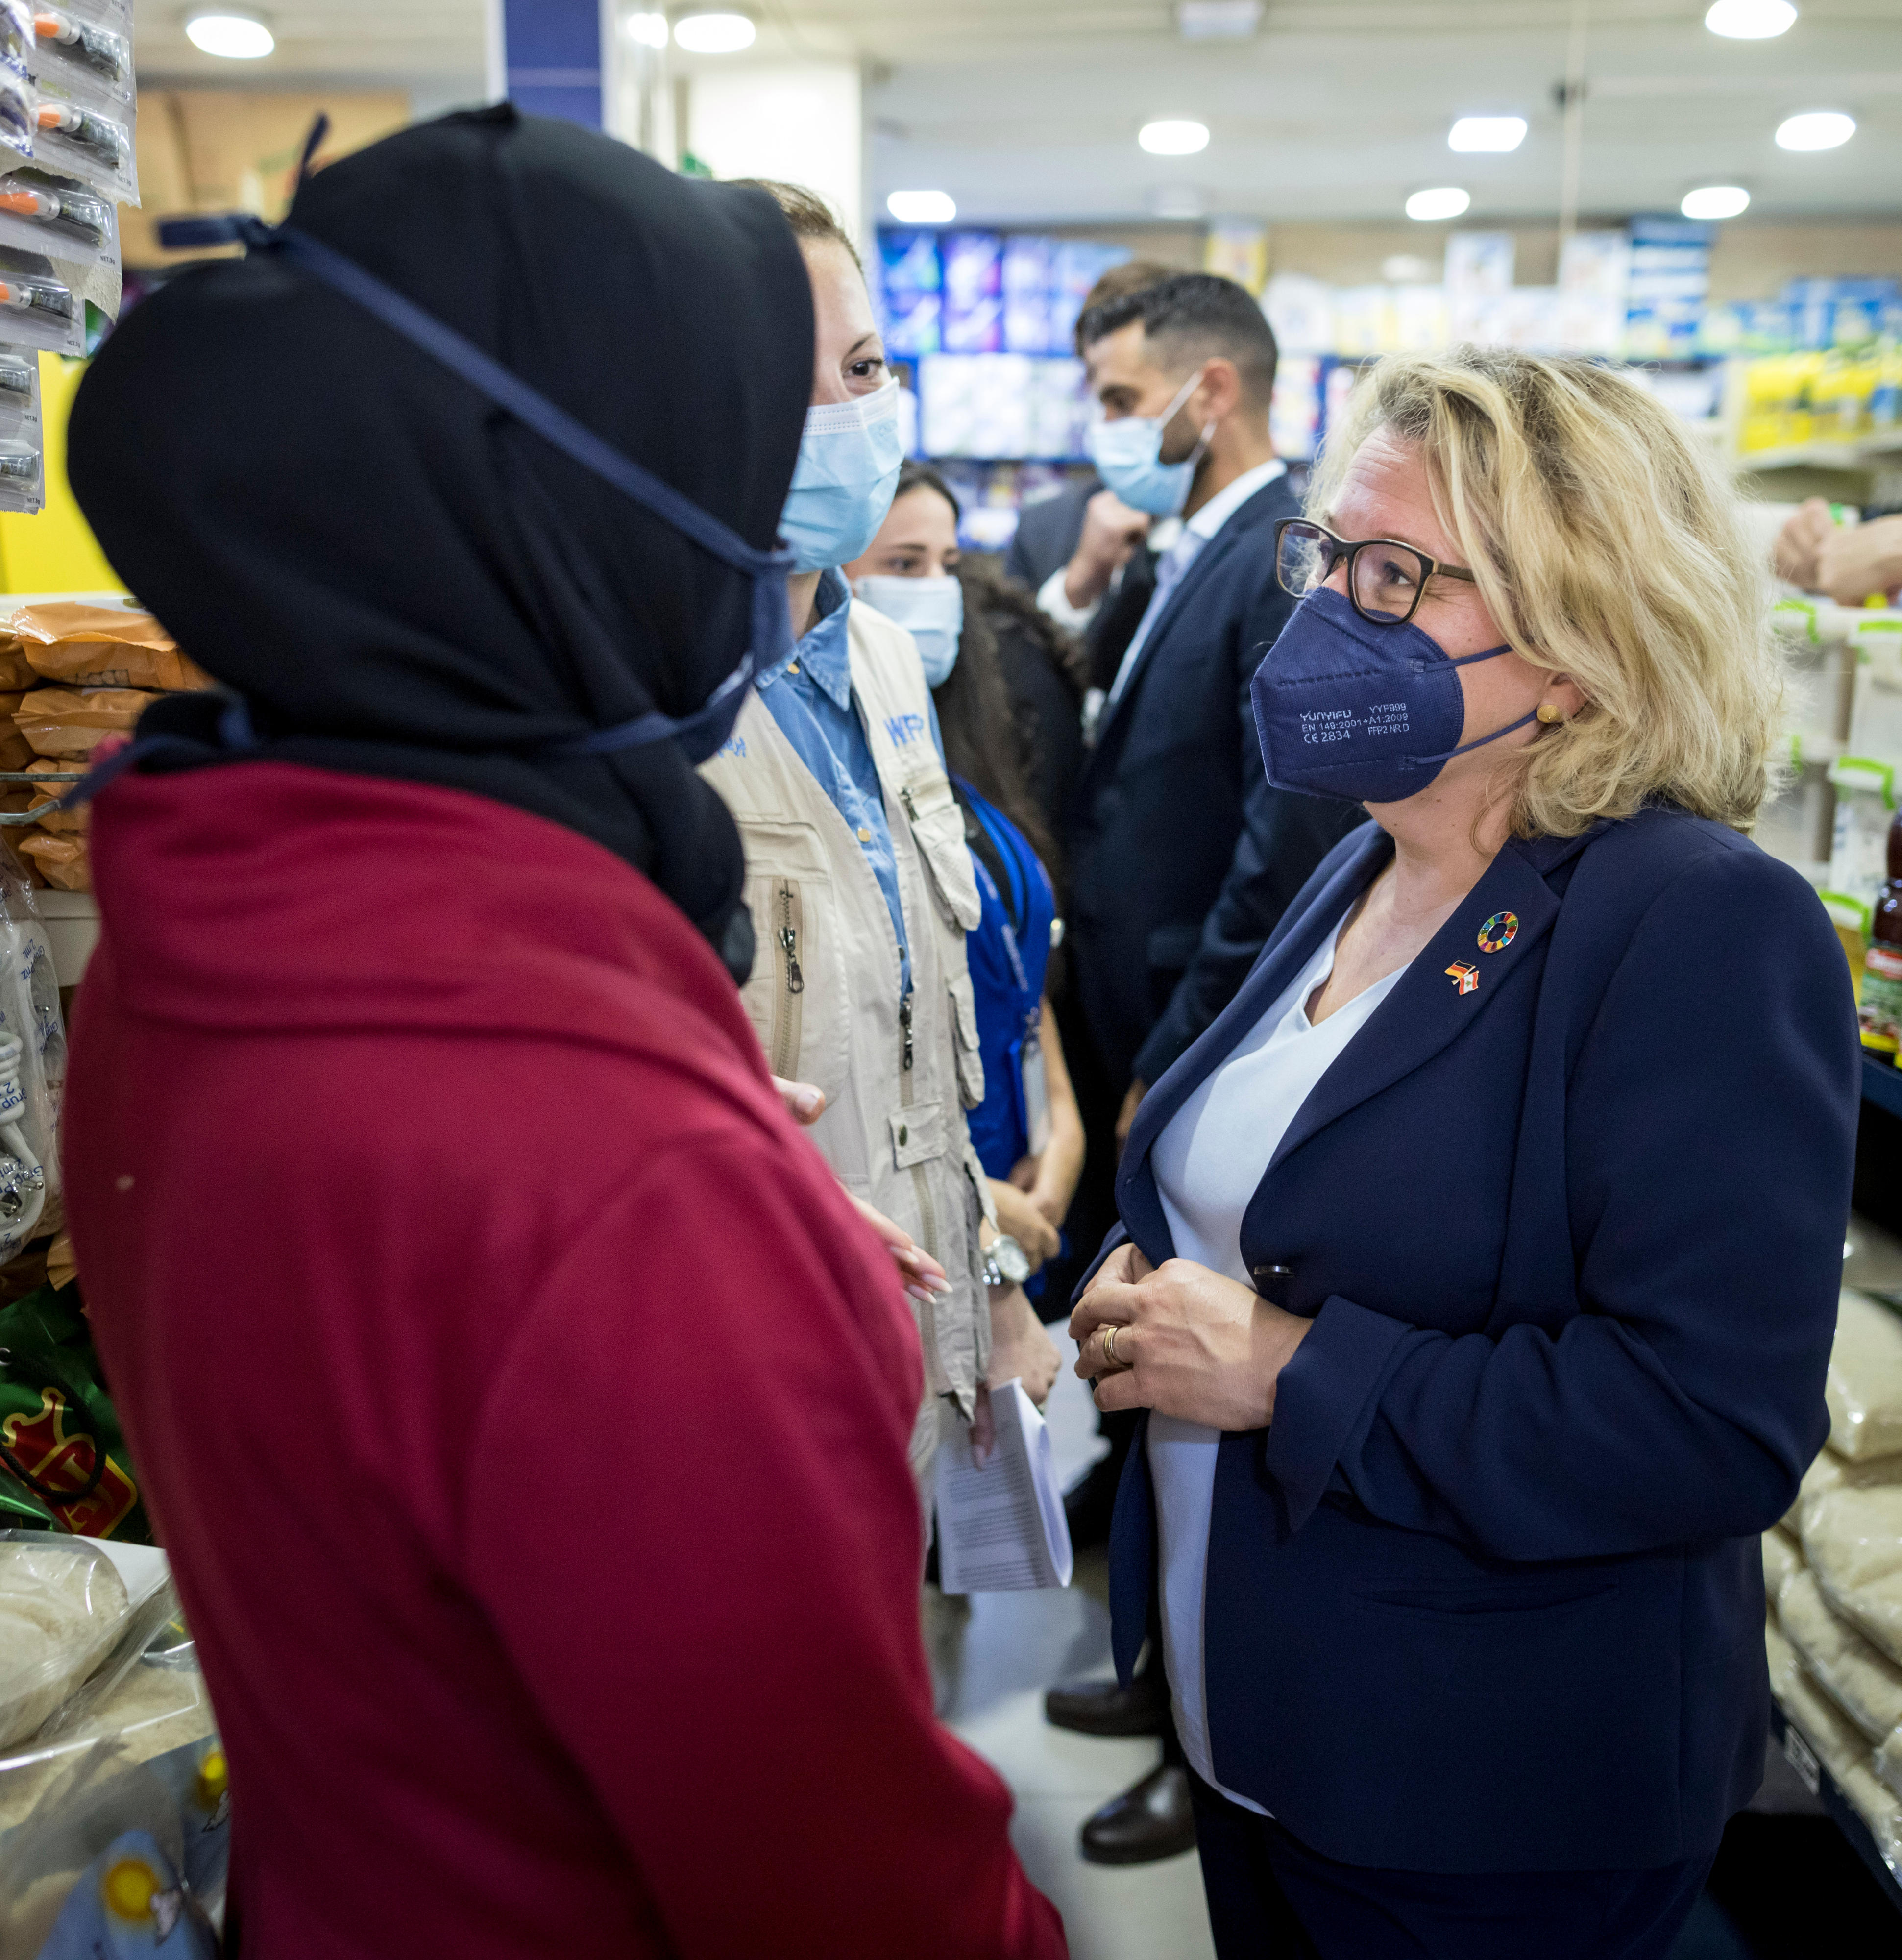 Bundesentwicklungsministerin Svenja Schulze im Gespräch mit syrischen Geflüchteten in einem Vertrags-Supermarkt des UN-Welternährungsprogramms (WFP).